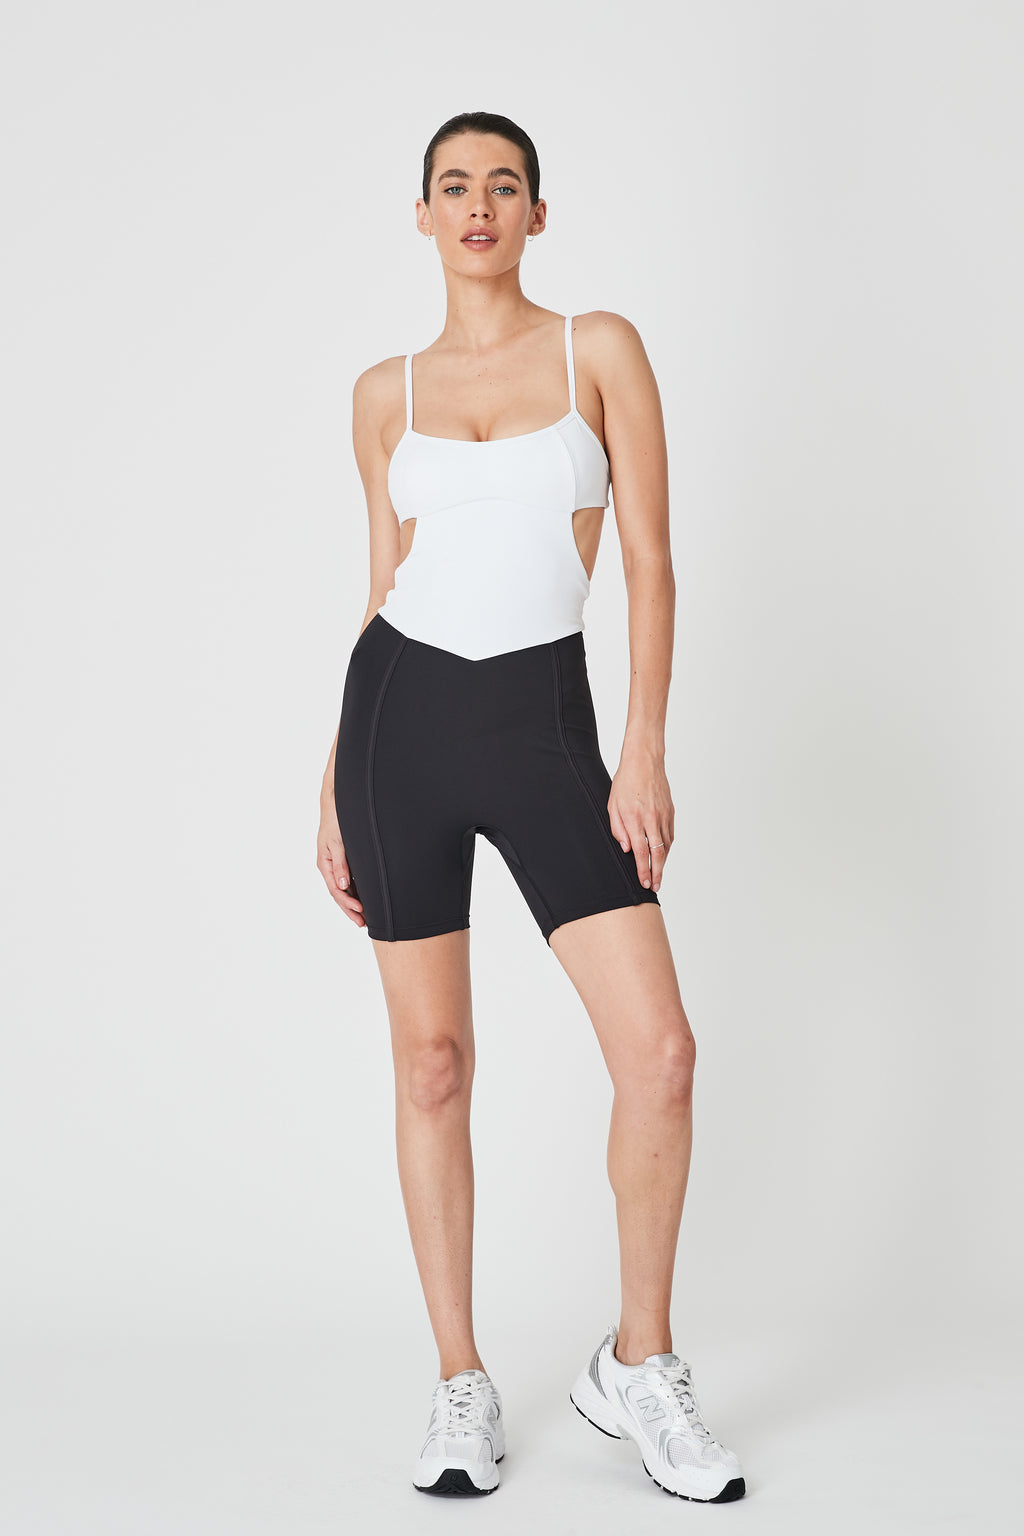 Sample Myra Cutout Bodysuit - White/Matte Black